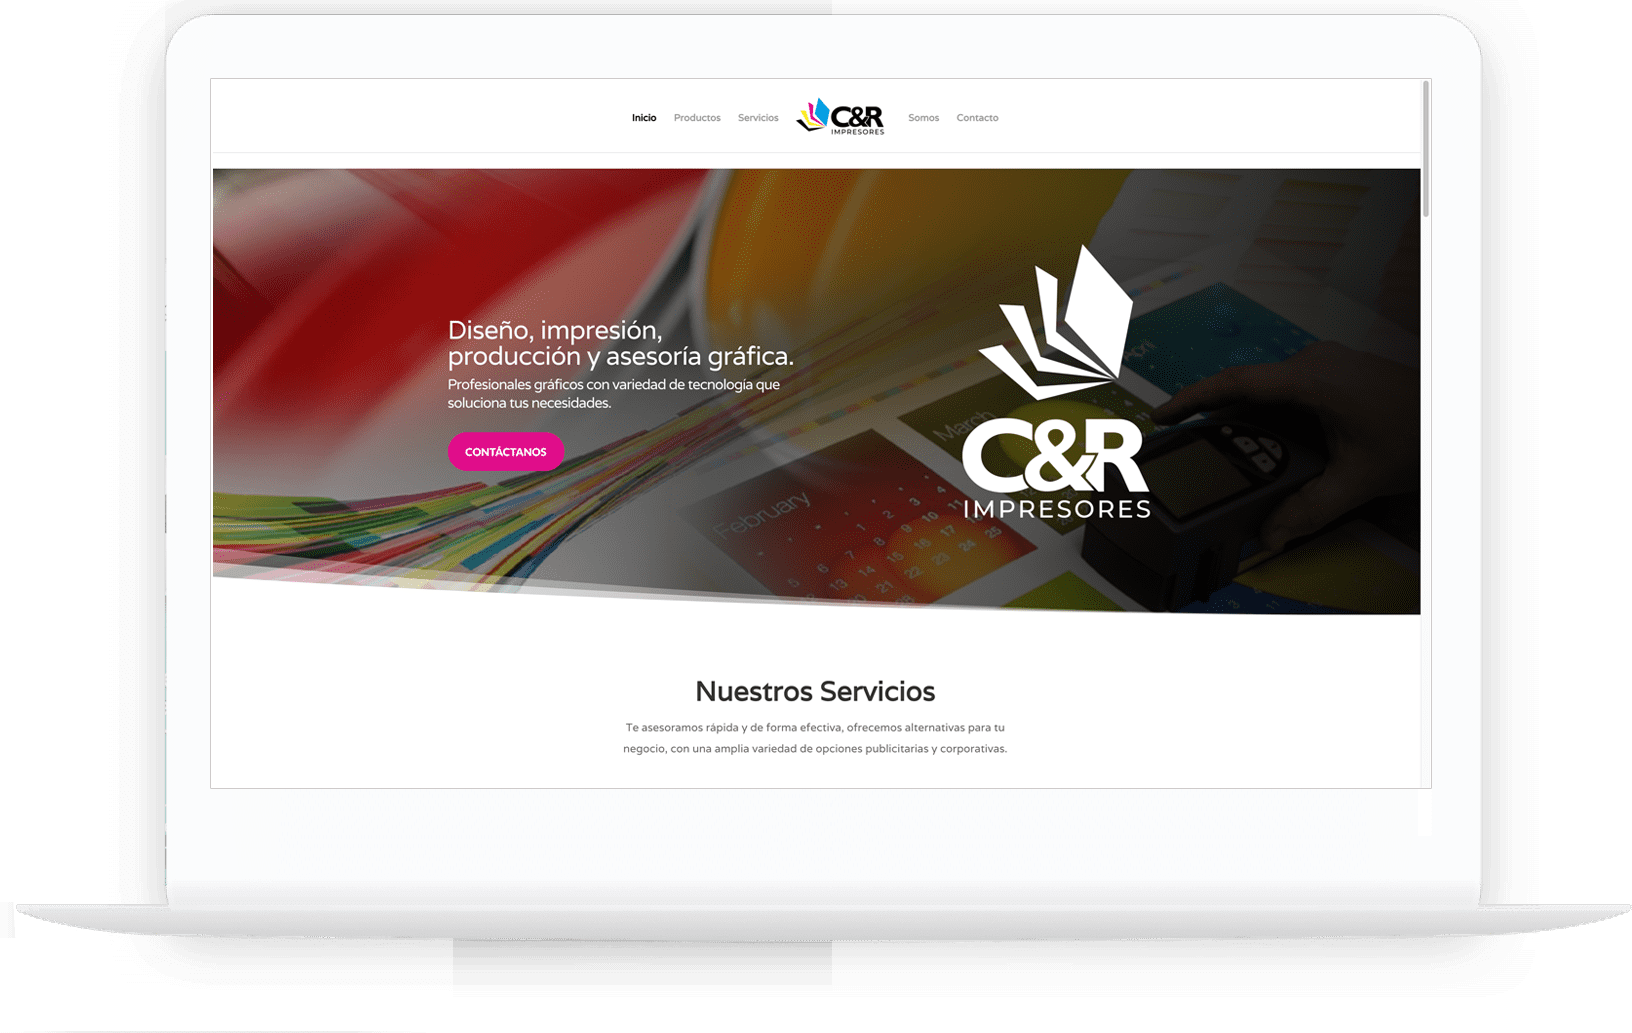 CYR Impresores web